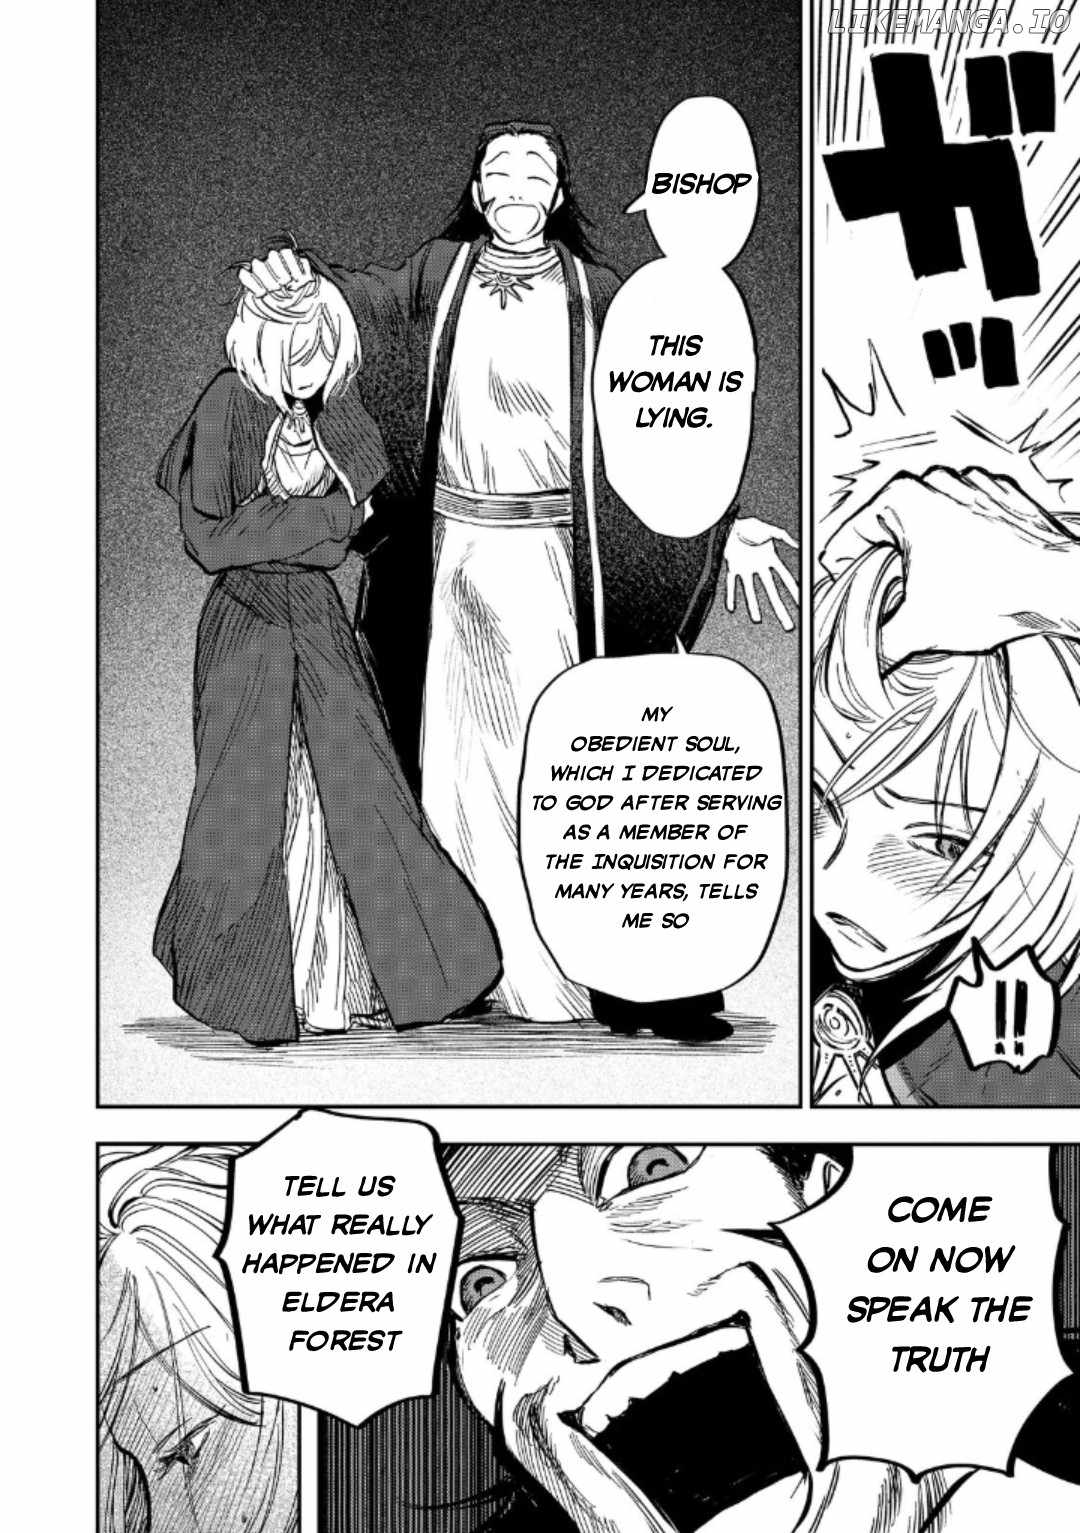 Meiou-sama ga Tooru no desu yo! Chapter 13-eng-li - Page 8